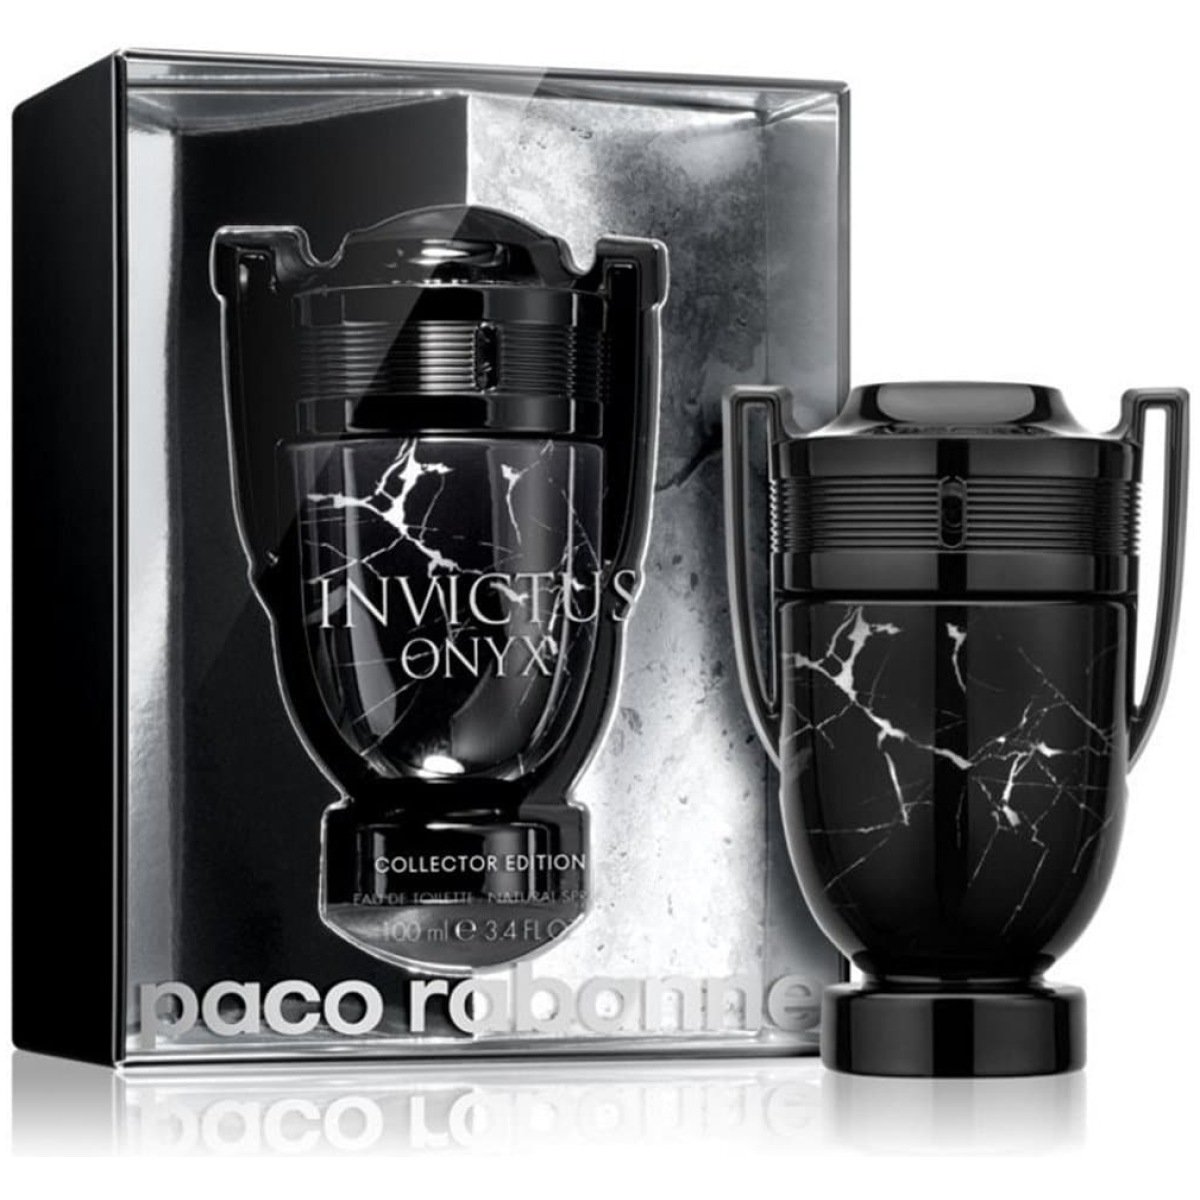 Paco Rabanne Invictus Onyx EDT Perfume For Men 100 ml